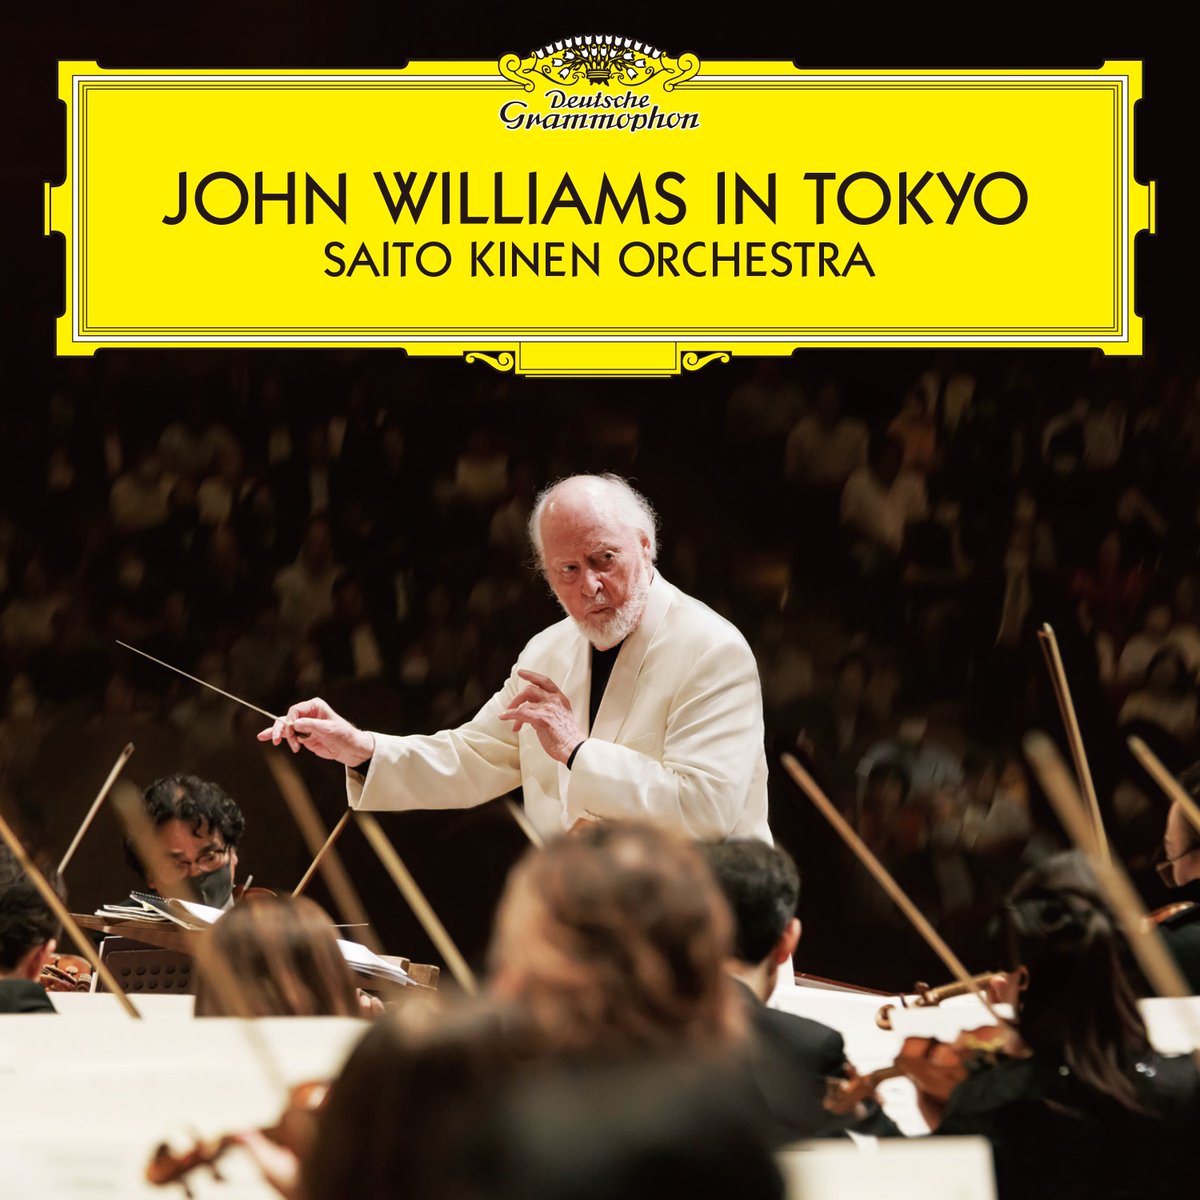 【昨年のJ・ウィリアムズの演奏会がCDに！】昨年30年ぶりに来日したジョン・ウィリアムズ。そのサントリーホールでの演奏会がCDとなってリリースされました！ジョン・ウィリアムズが指揮した11曲が中心のライナップ。あの感動をもう一度追体験しませんか？詳細はこちらから→ universal-music.co.jp/john-williams/…